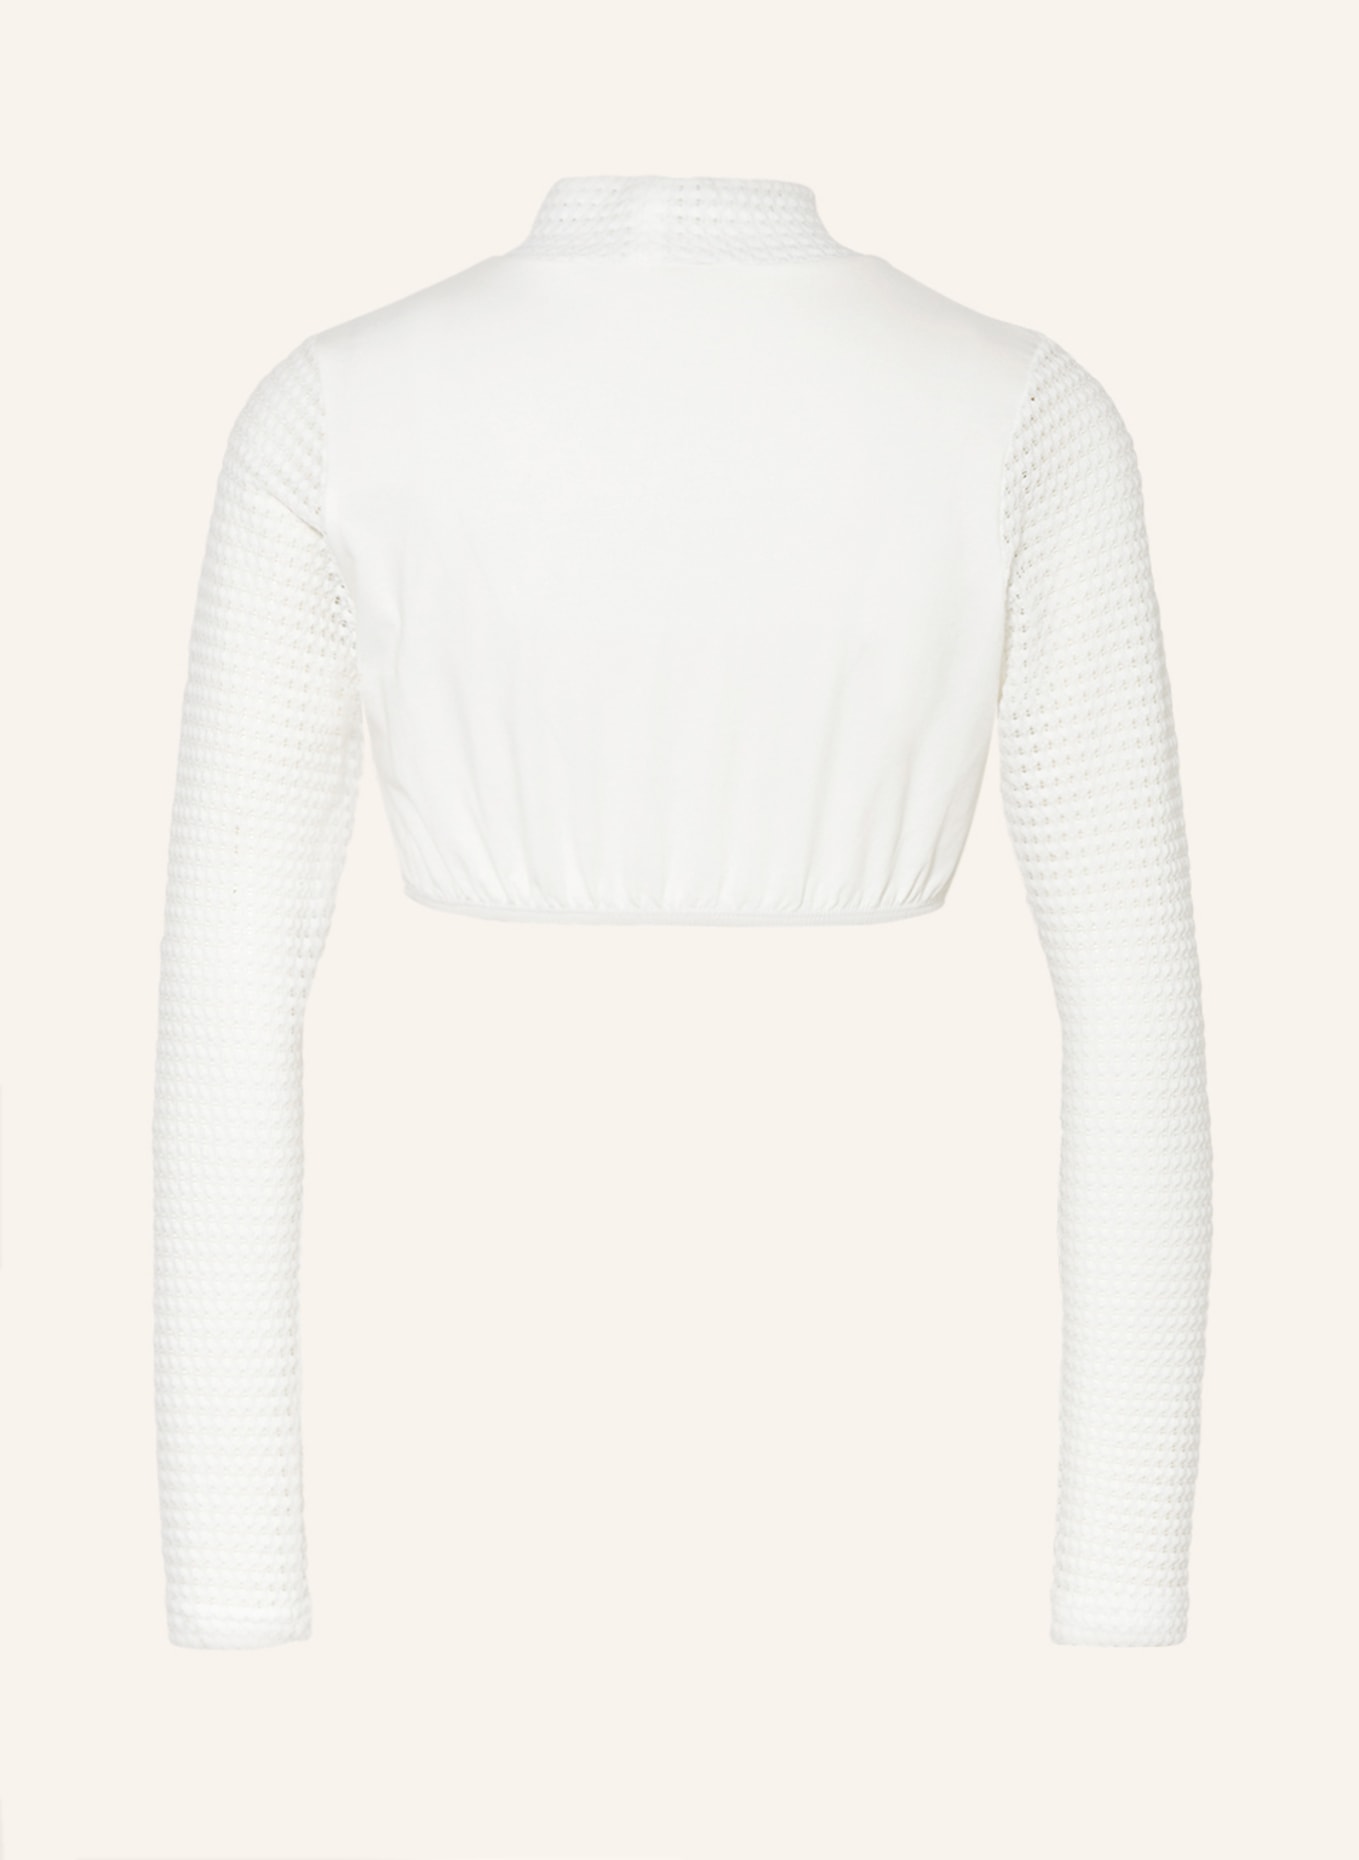 KRÜGER Dirndl blouse, Color: ECRU (Image 2)